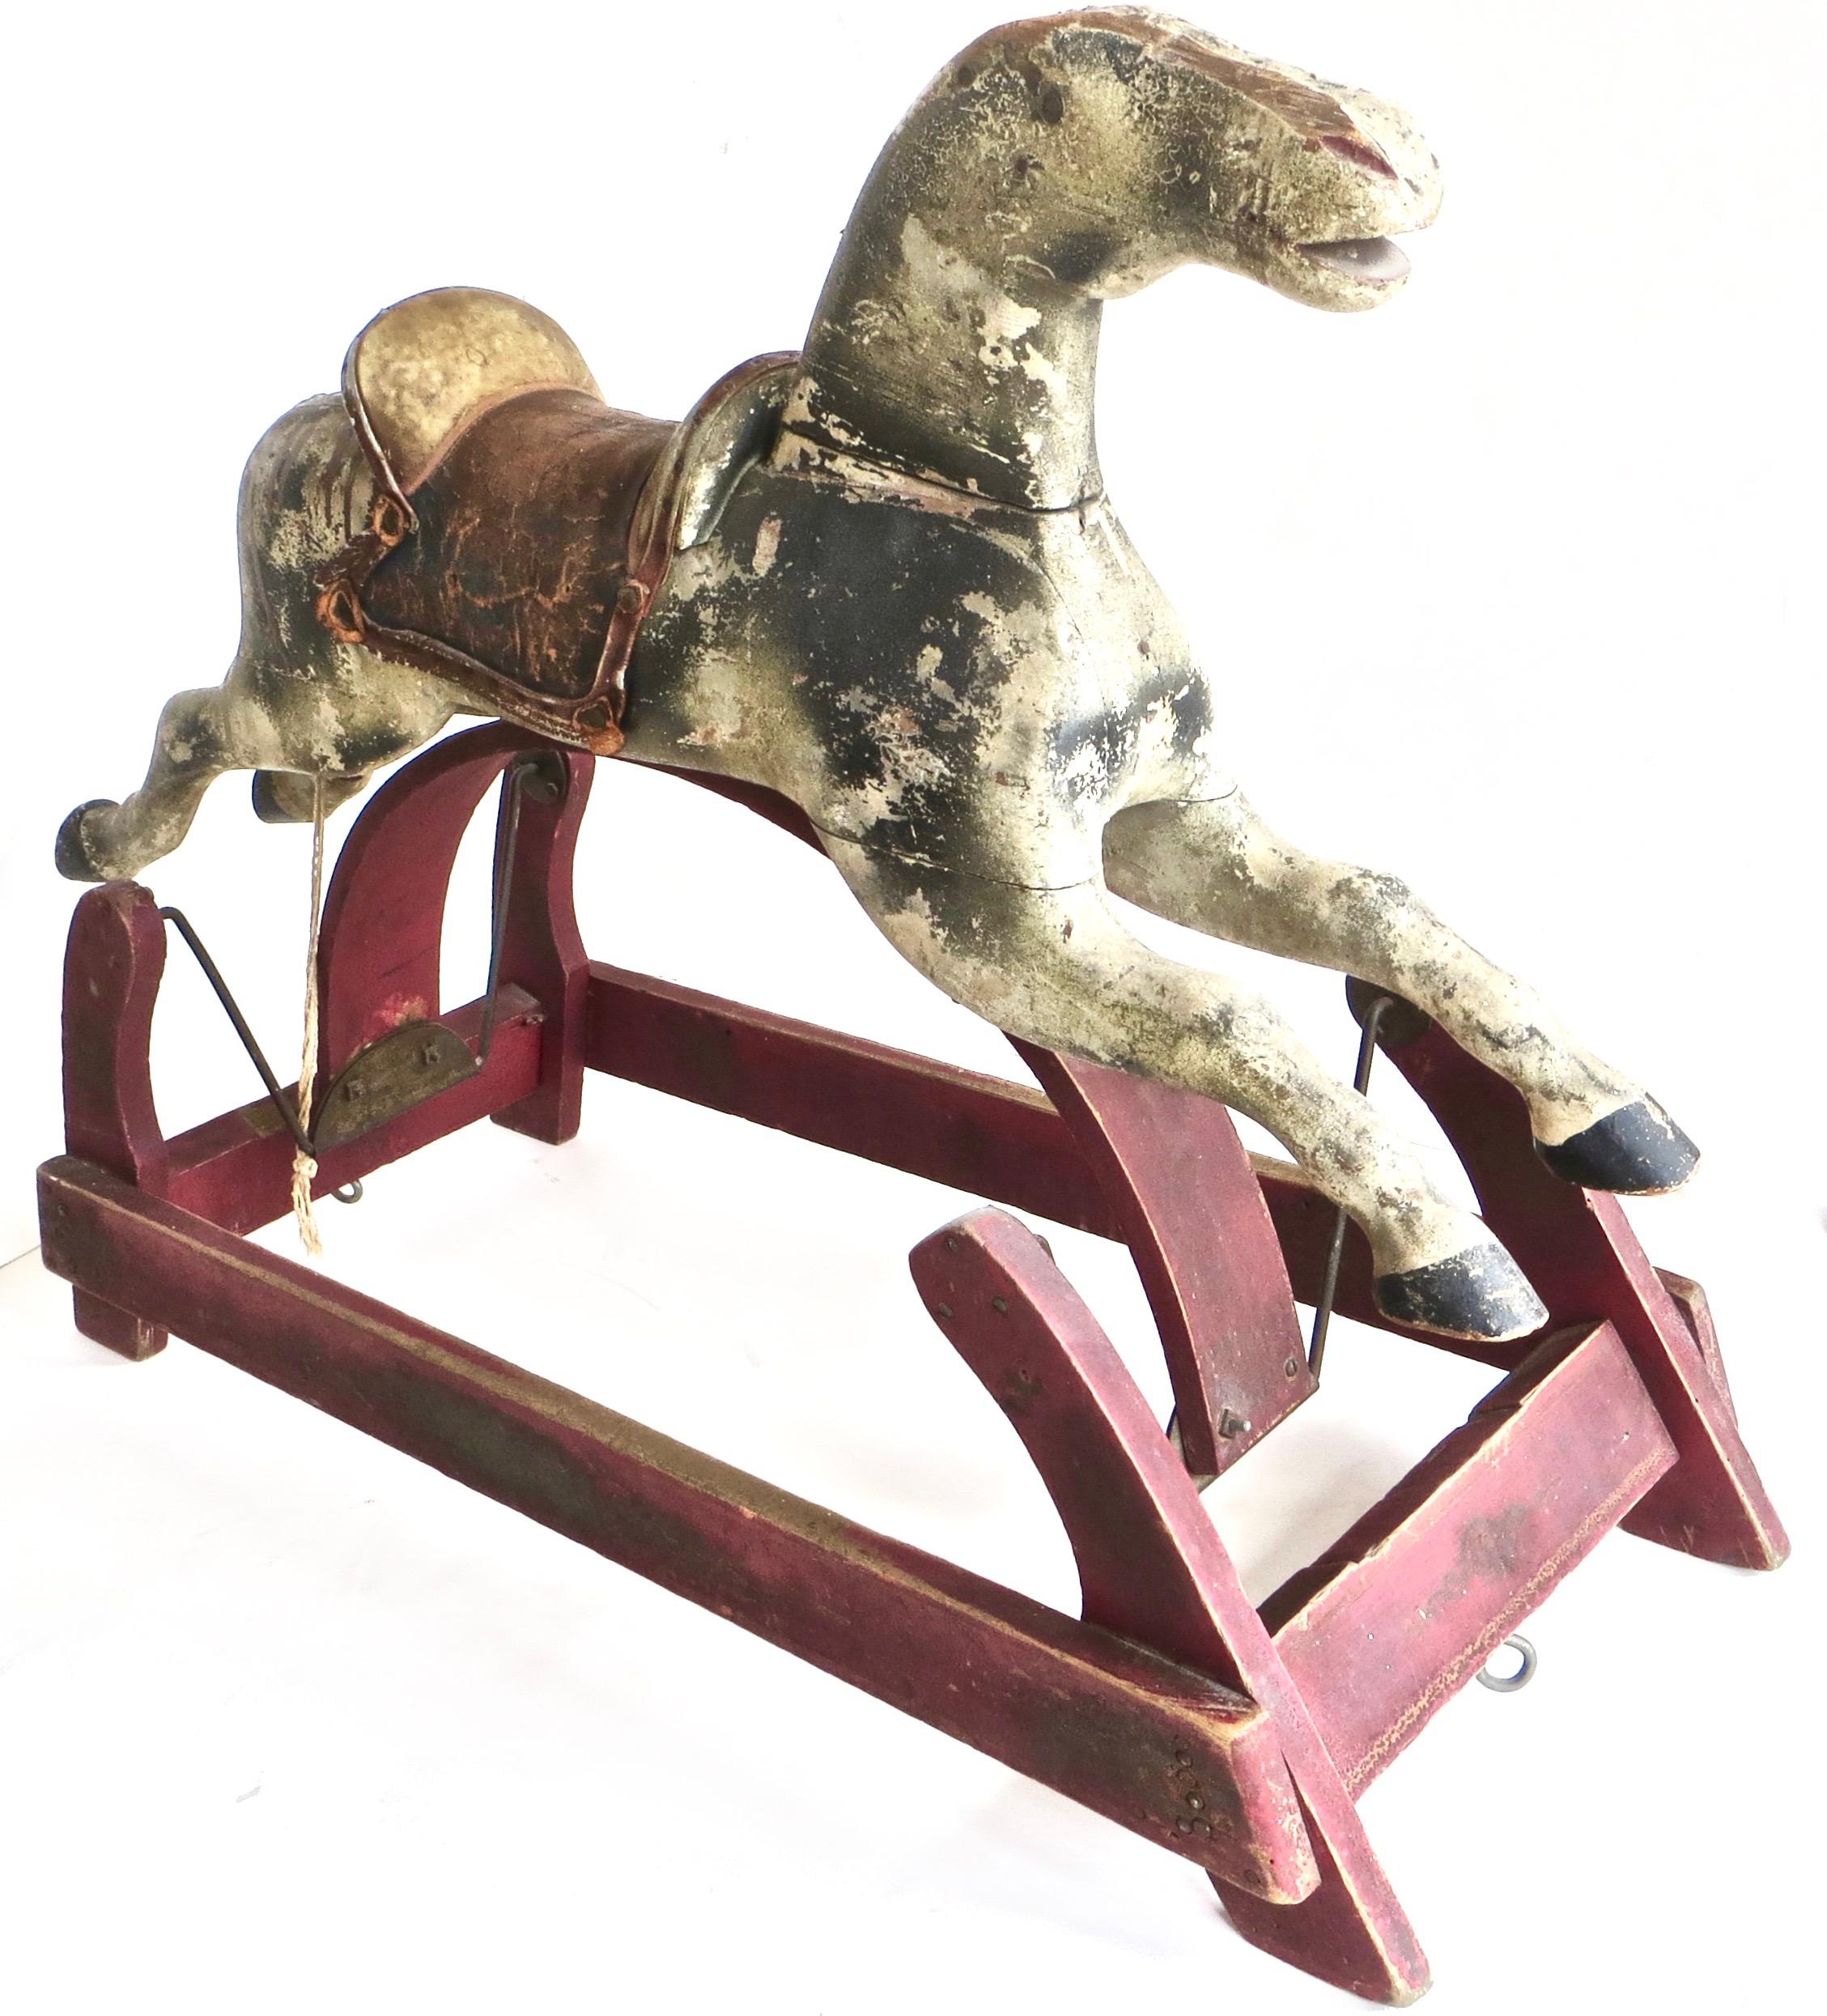 Dieses authentische, um 1875 in Amerika hergestellte Schaukelpferd für Kinder ist aus hartem Holz handgeschnitzt und hat einen handgefertigten Ledersattel, auf dem ein sitzendes Kind hin- und herschaukeln kann, indem eine andere Person das Pferd mit